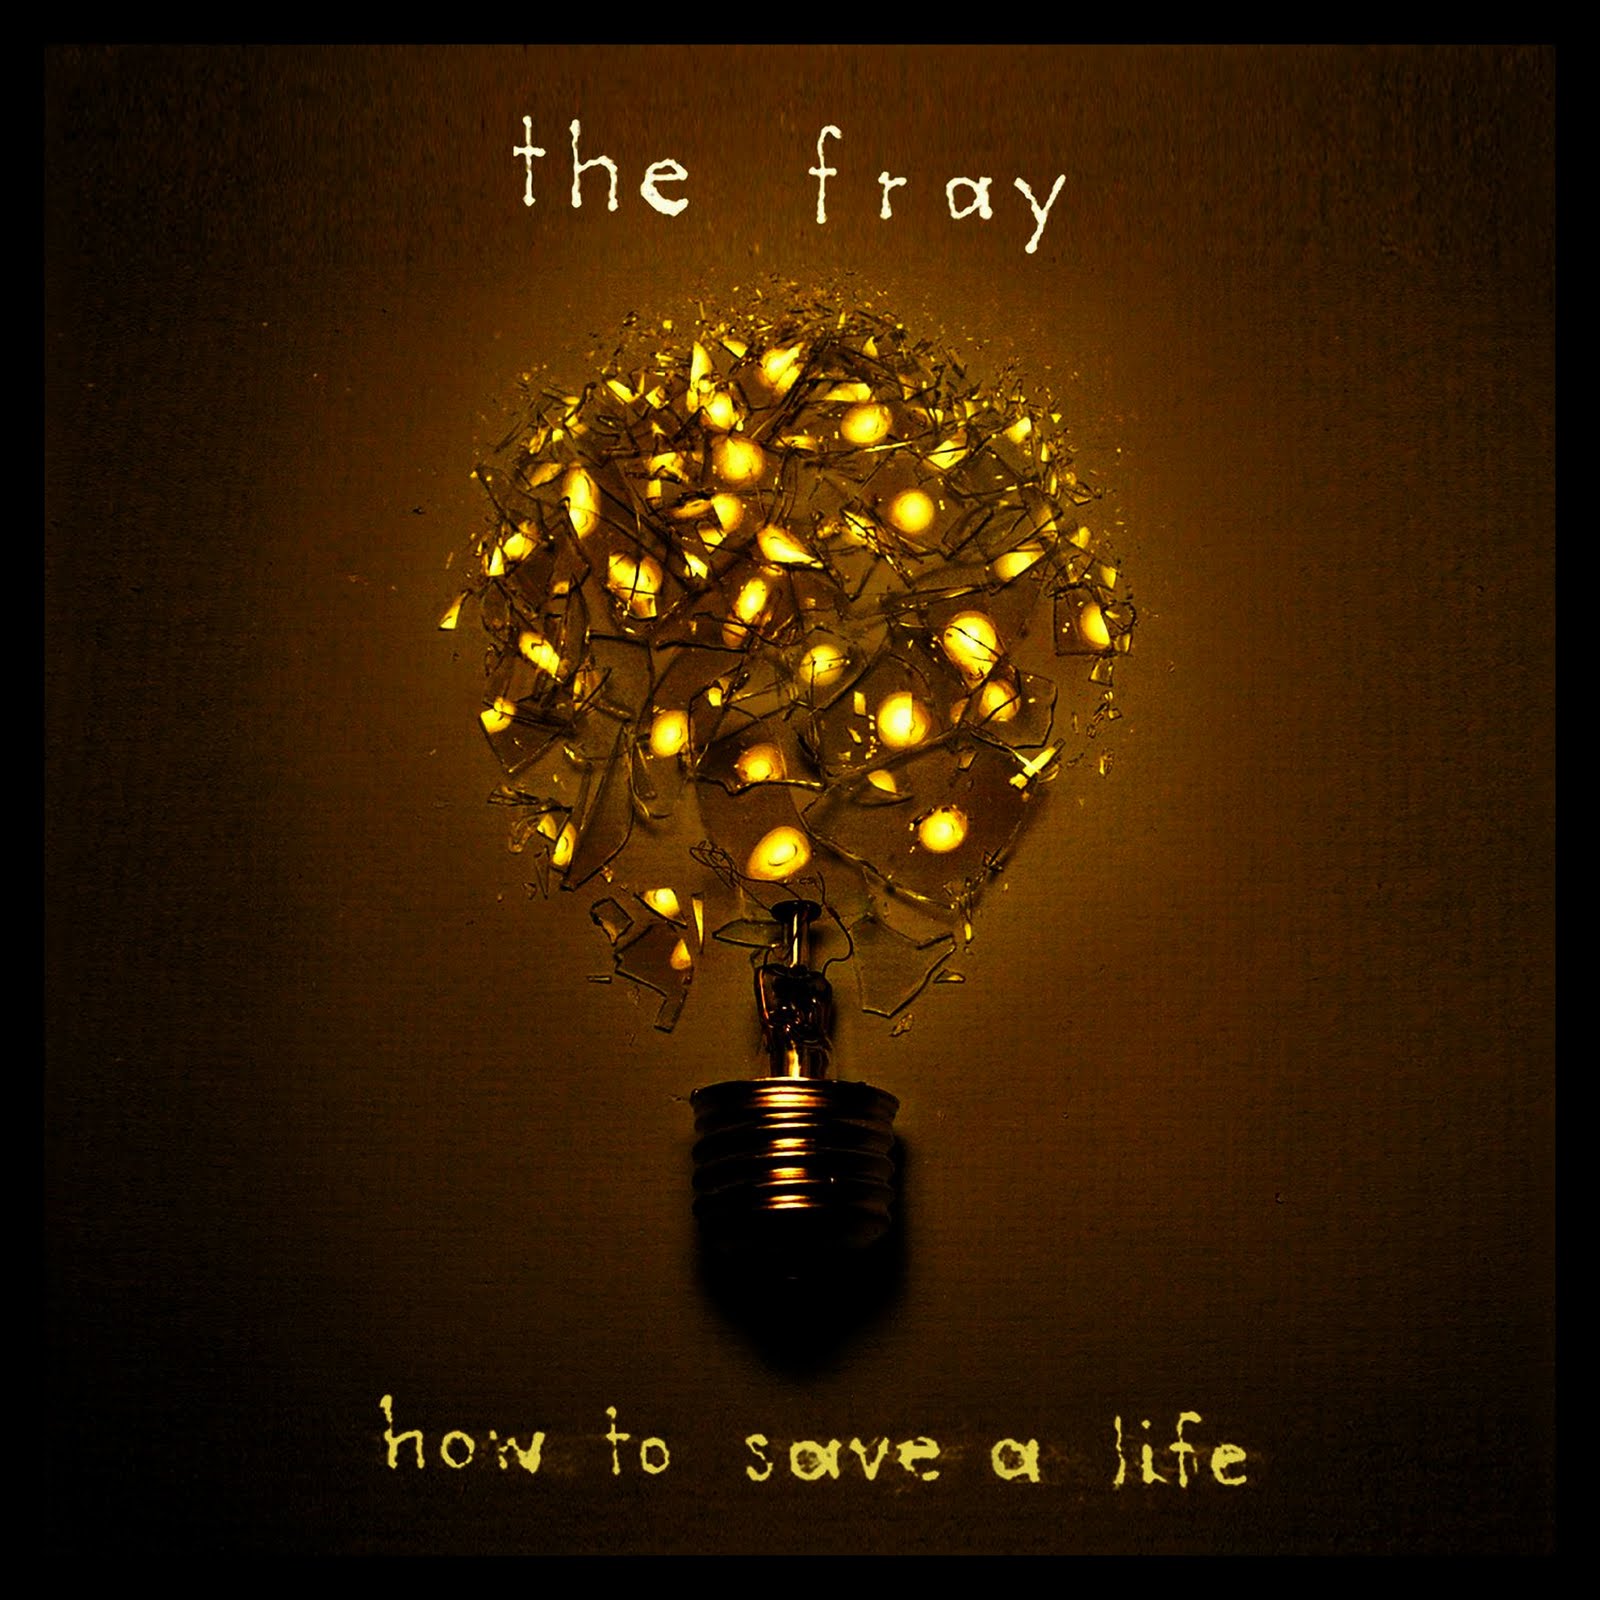 http://2.bp.blogspot.com/_rNf6nogJIdk/TJSeM0K4nlI/AAAAAAAAACE/_Nk9Hu3h7Ac/s1600/How+to+Save+a+Life+Album+Cover+for+The+Fray1.jpg